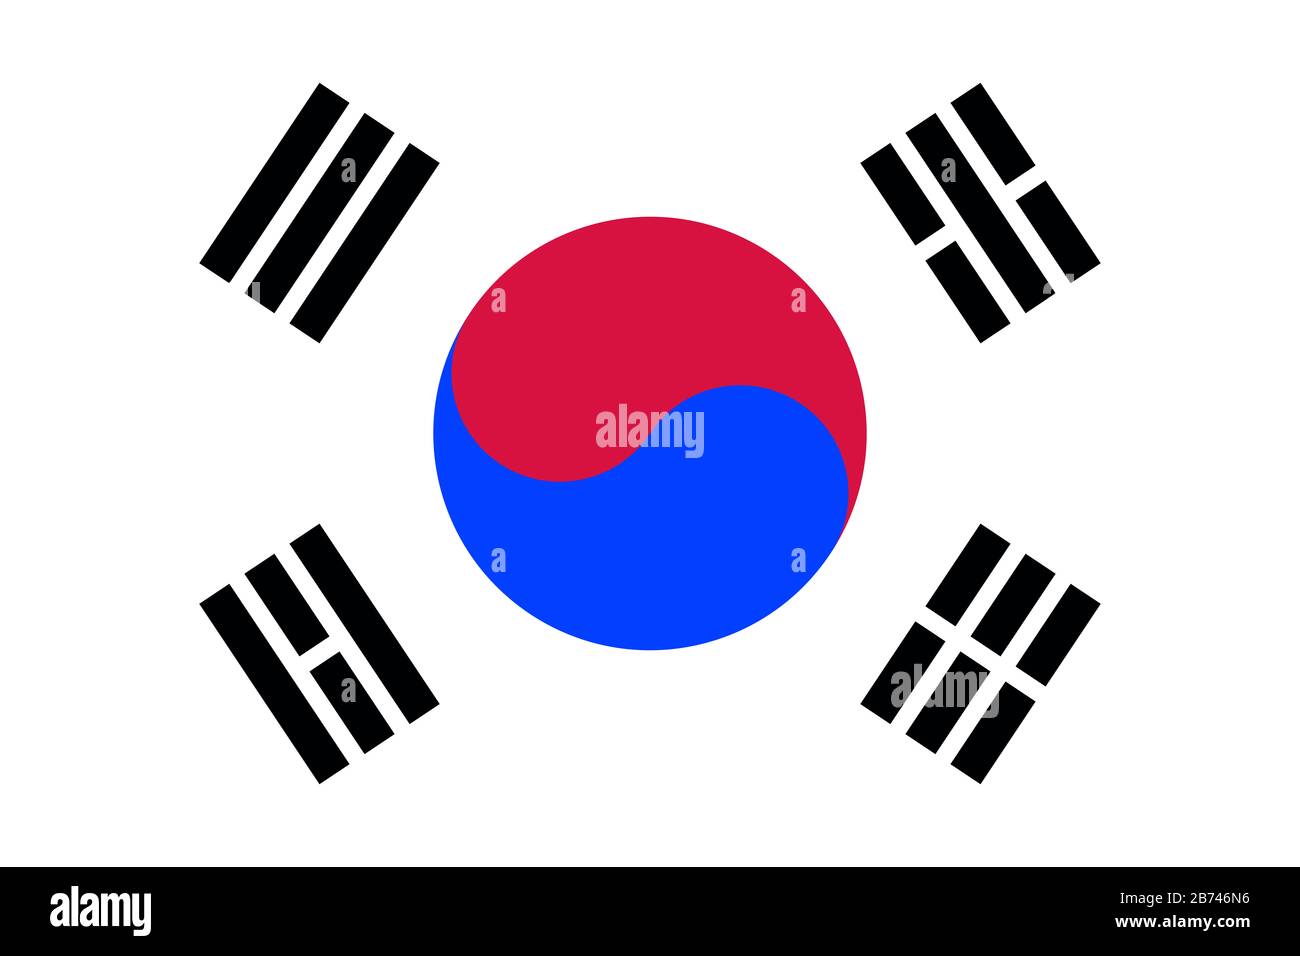 Flagge Südkoreas - Standardverhältnis der koreanischen Flagge - True RGB-Farbmodus Stockfoto